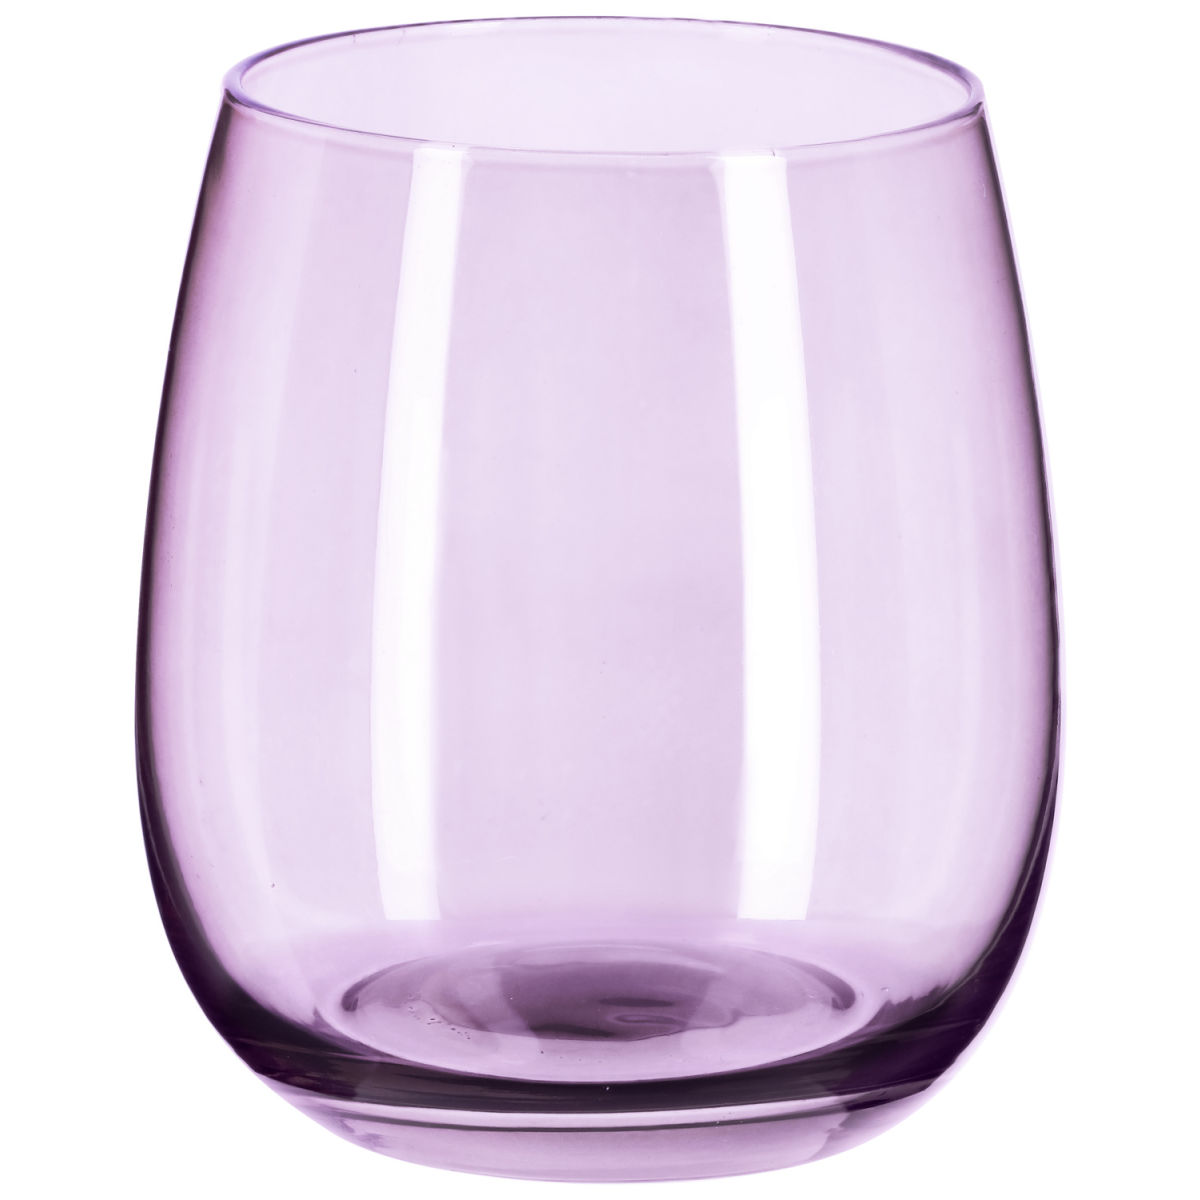 Vega Glas Bea; 375ml, 7x9.4 cm (ØxH); rosa; 6 stuk / verpakking